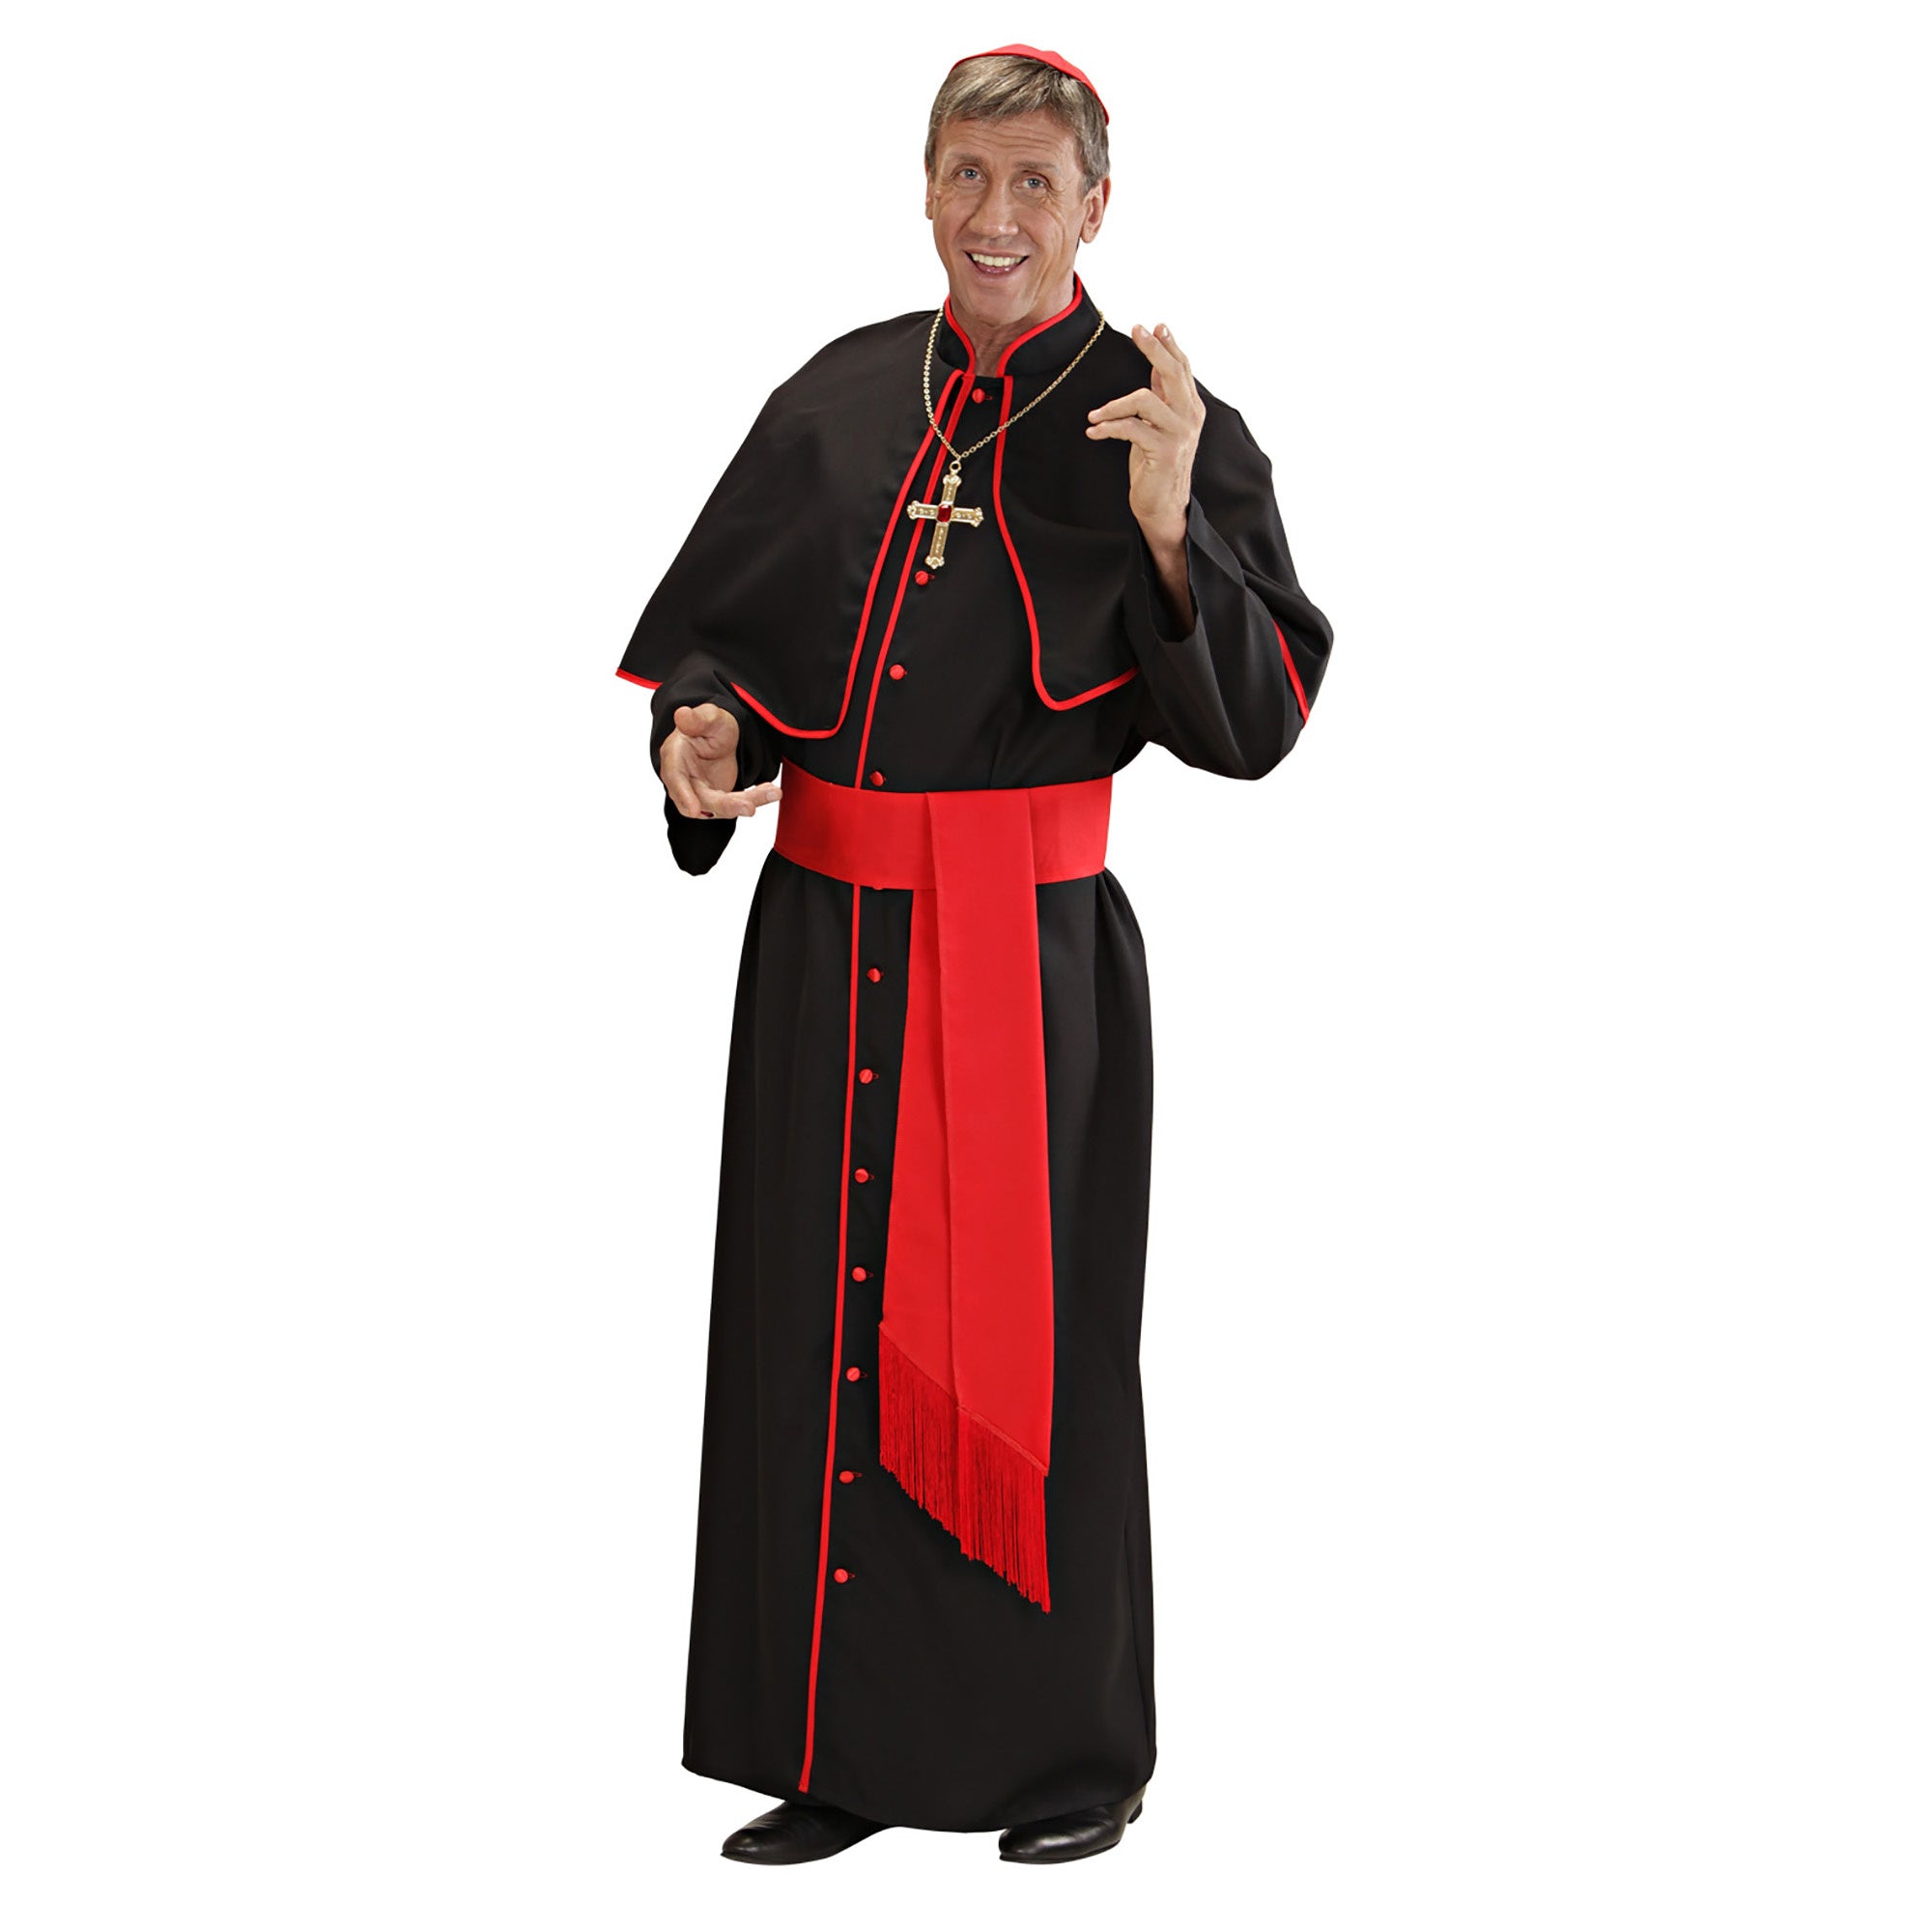 Widmann - Religie Kostuum - Kardinaal Luxe St Pieter Kostuum Man - Rood, Zwart - XL - Carnavalskleding - Verkleedkleding